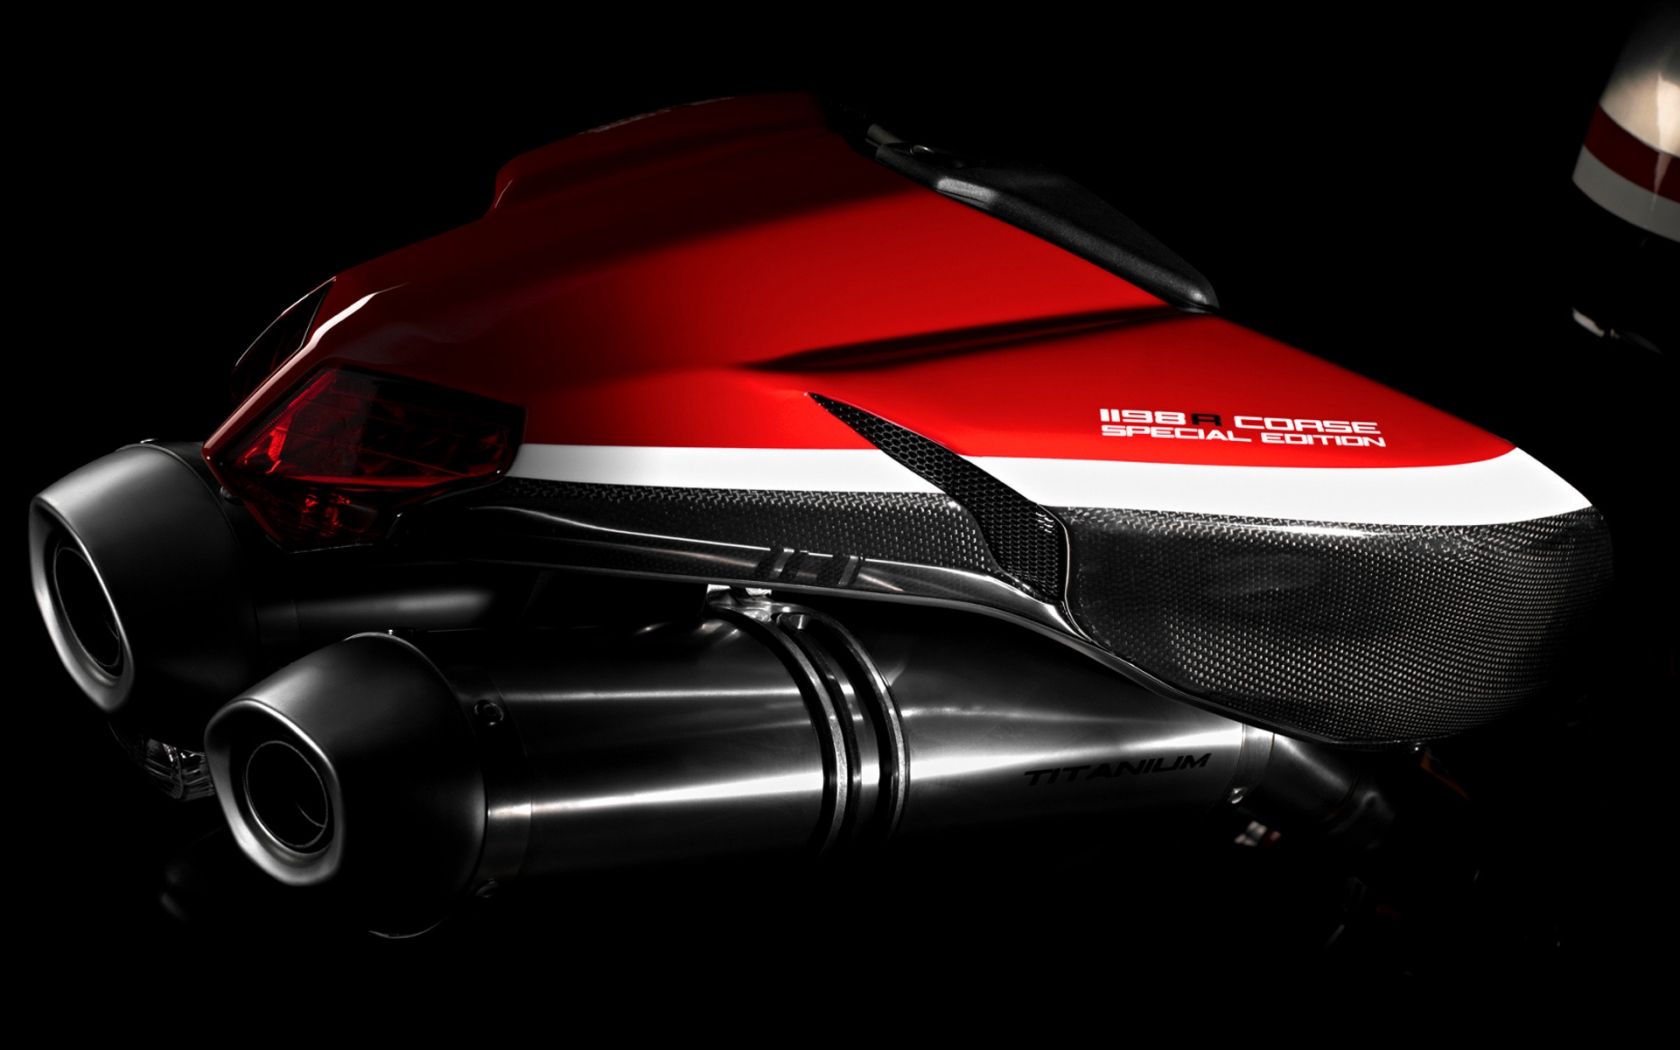 Ducati Superbike-1198-R-Corse Rear for 1680 x 1050 widescreen resolution